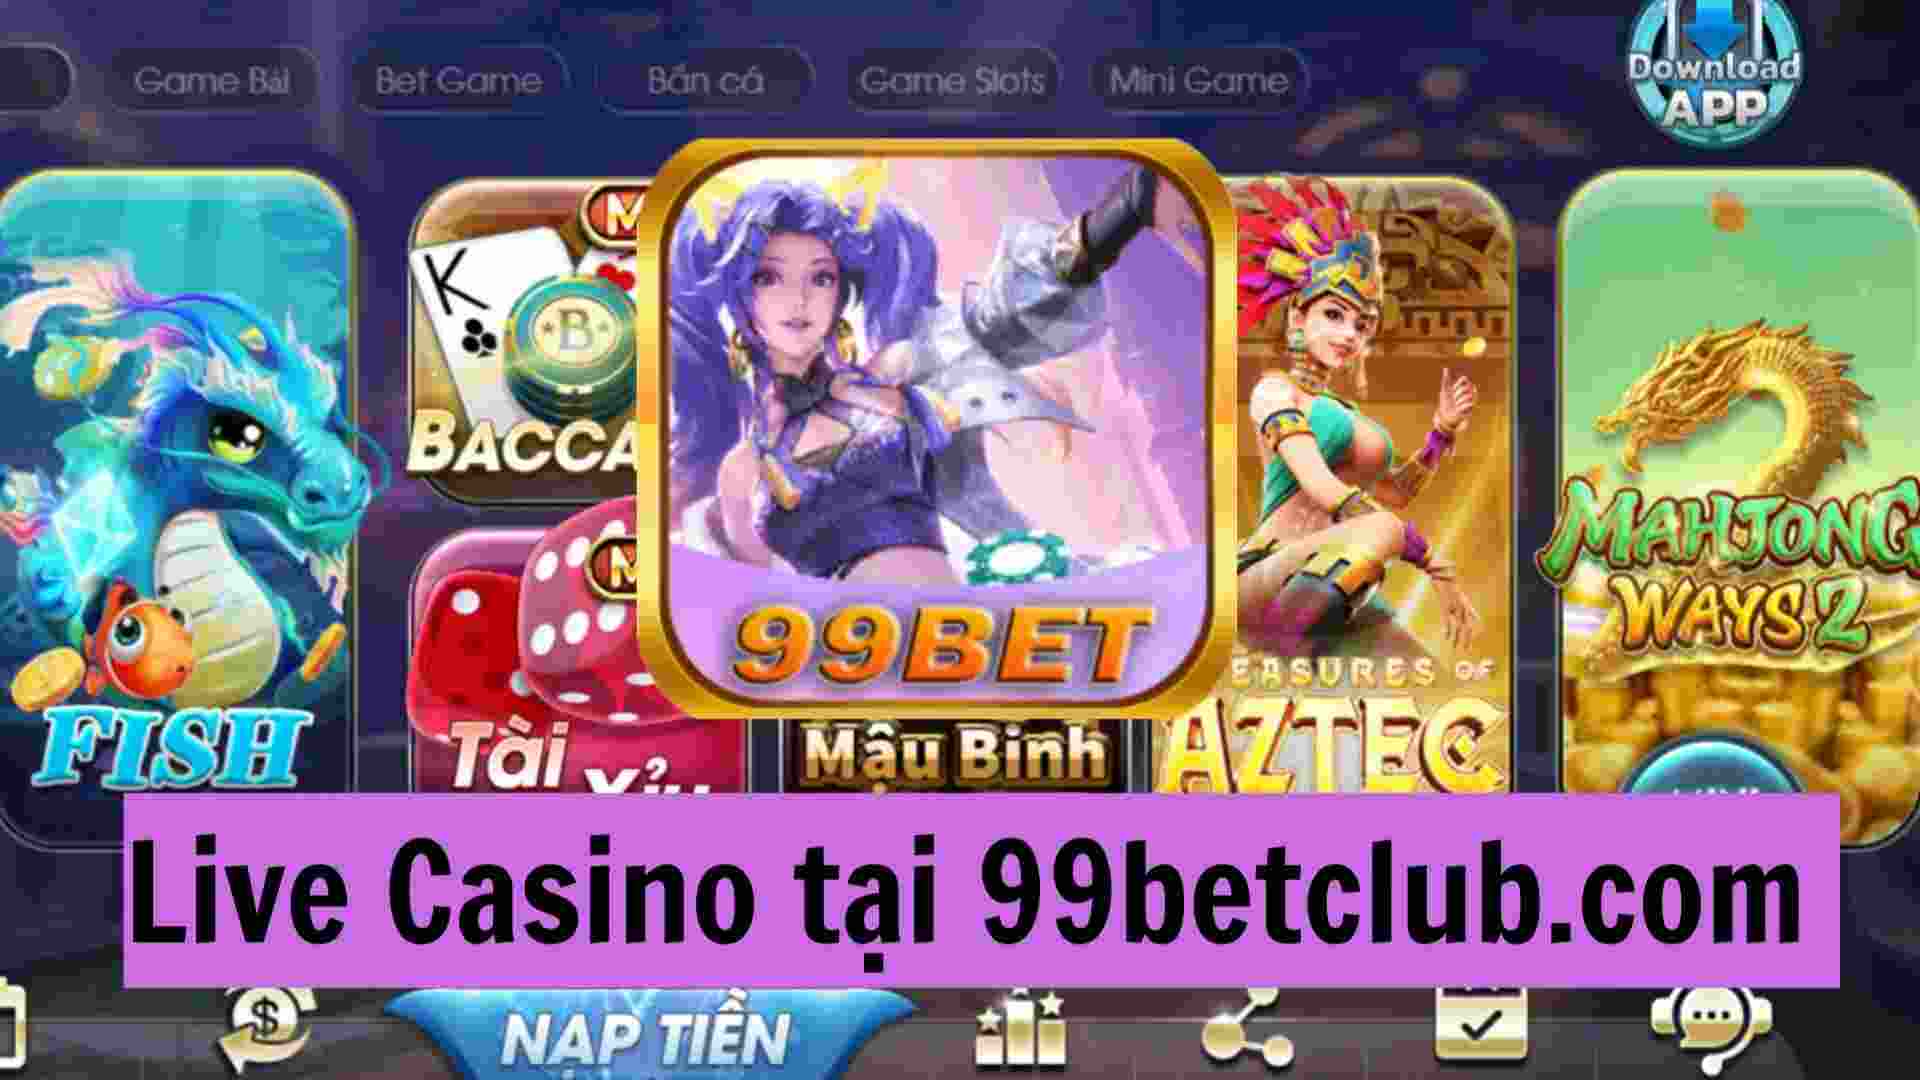 Live Casino tại 99bet tạo cơn sốt giải trí khắp thị trường game online